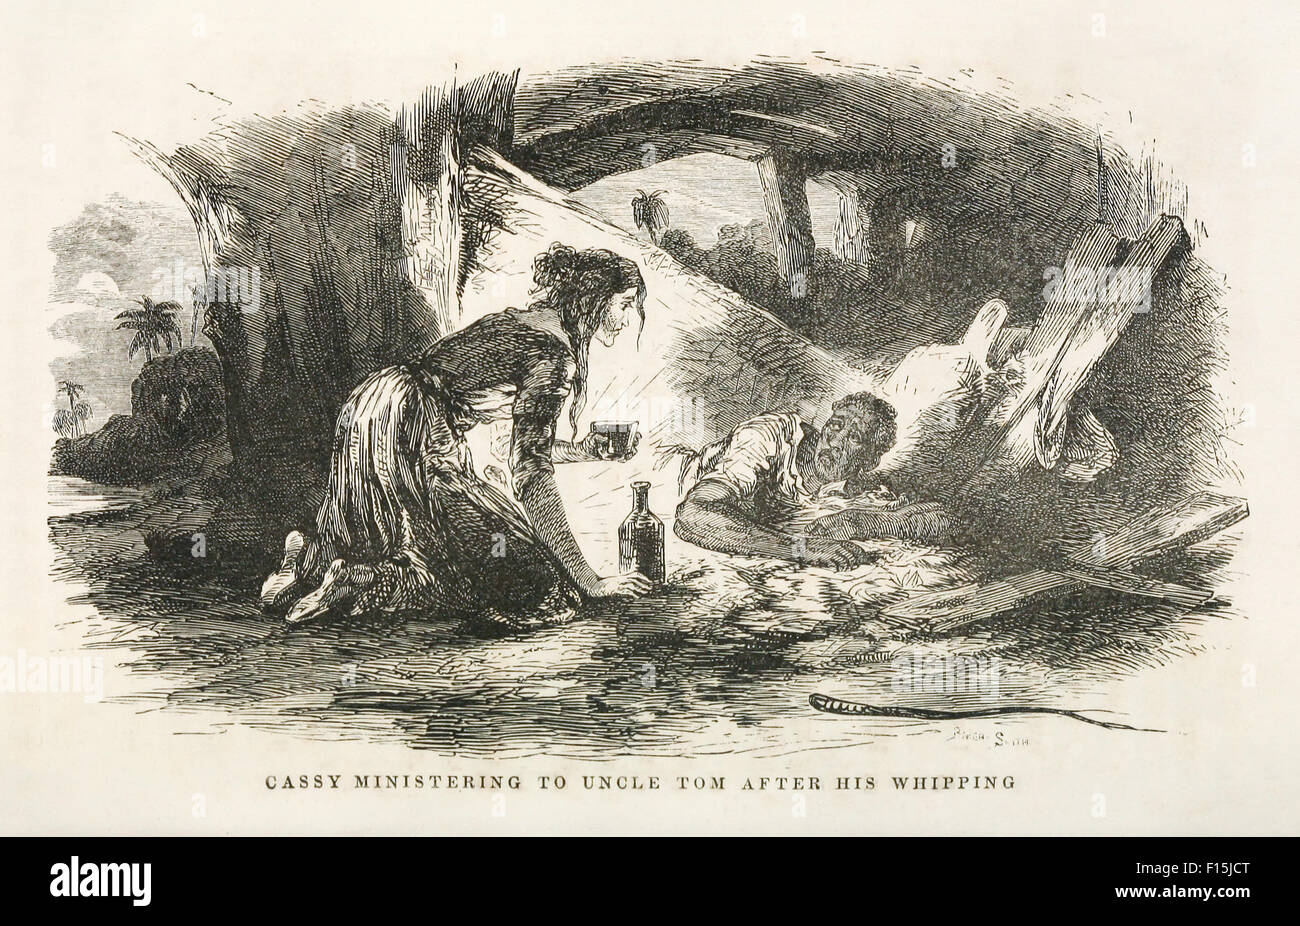 "Cassy servire a Zio Tom dopo la sua fustigazione.' illustrazione da Hammatt Billings (1818-1874) da "capanna dello zio Tom' da Harriet Beecher Stowe. Vedere la descrizione per maggiori informazioni. Foto Stock